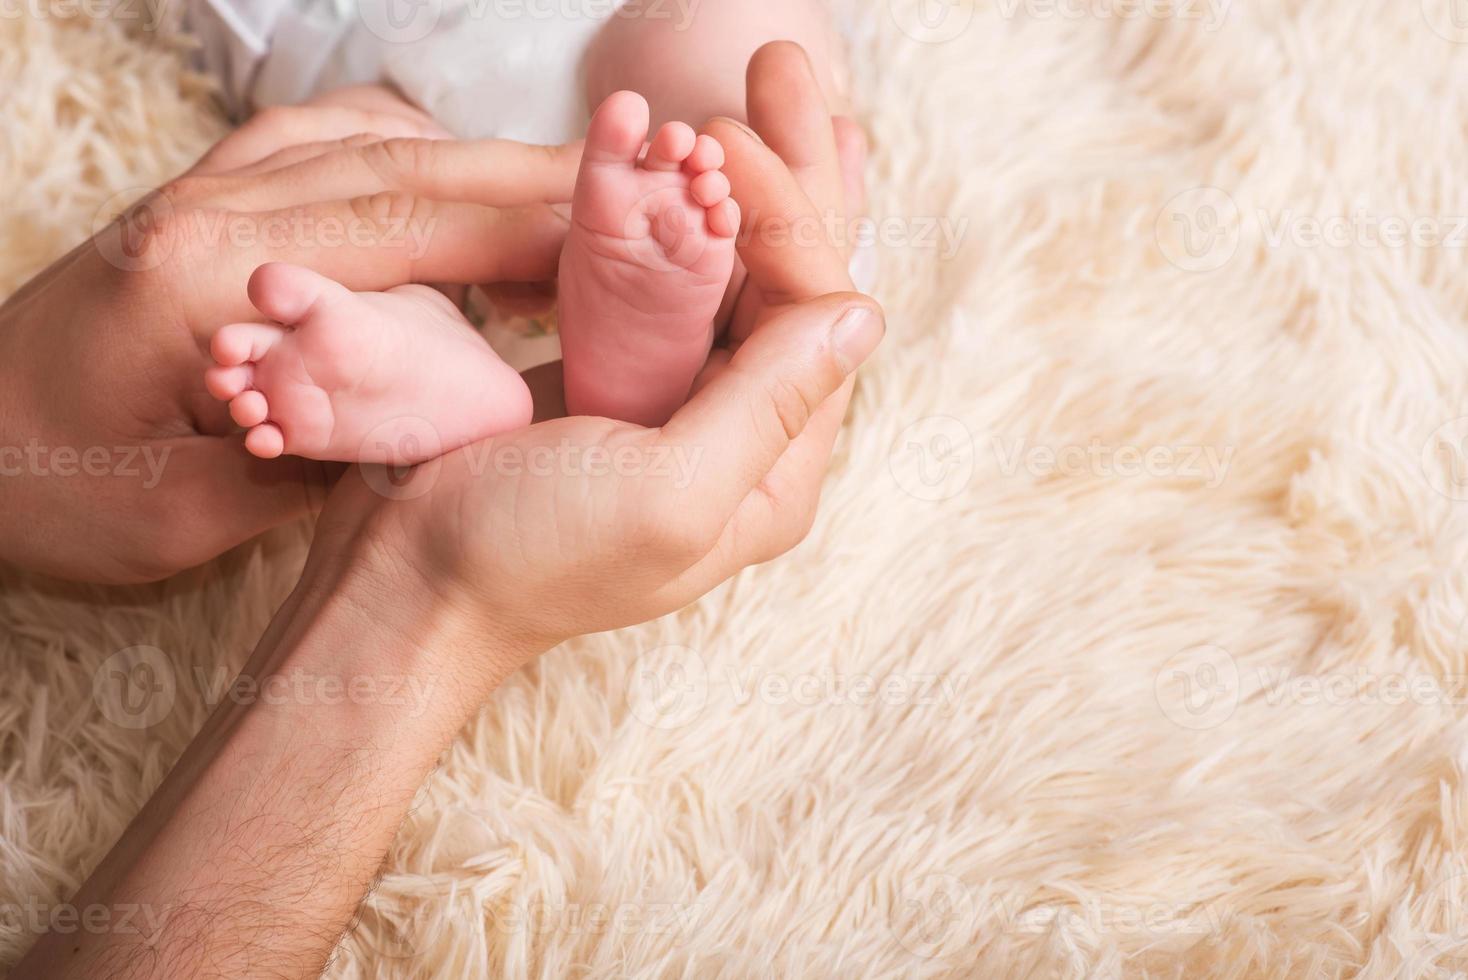 maman tient dans ses mains un petit pied de bébé. petites jambes d'un nouveau-né entre les mains de la mère. massage des pieds de bébé photo